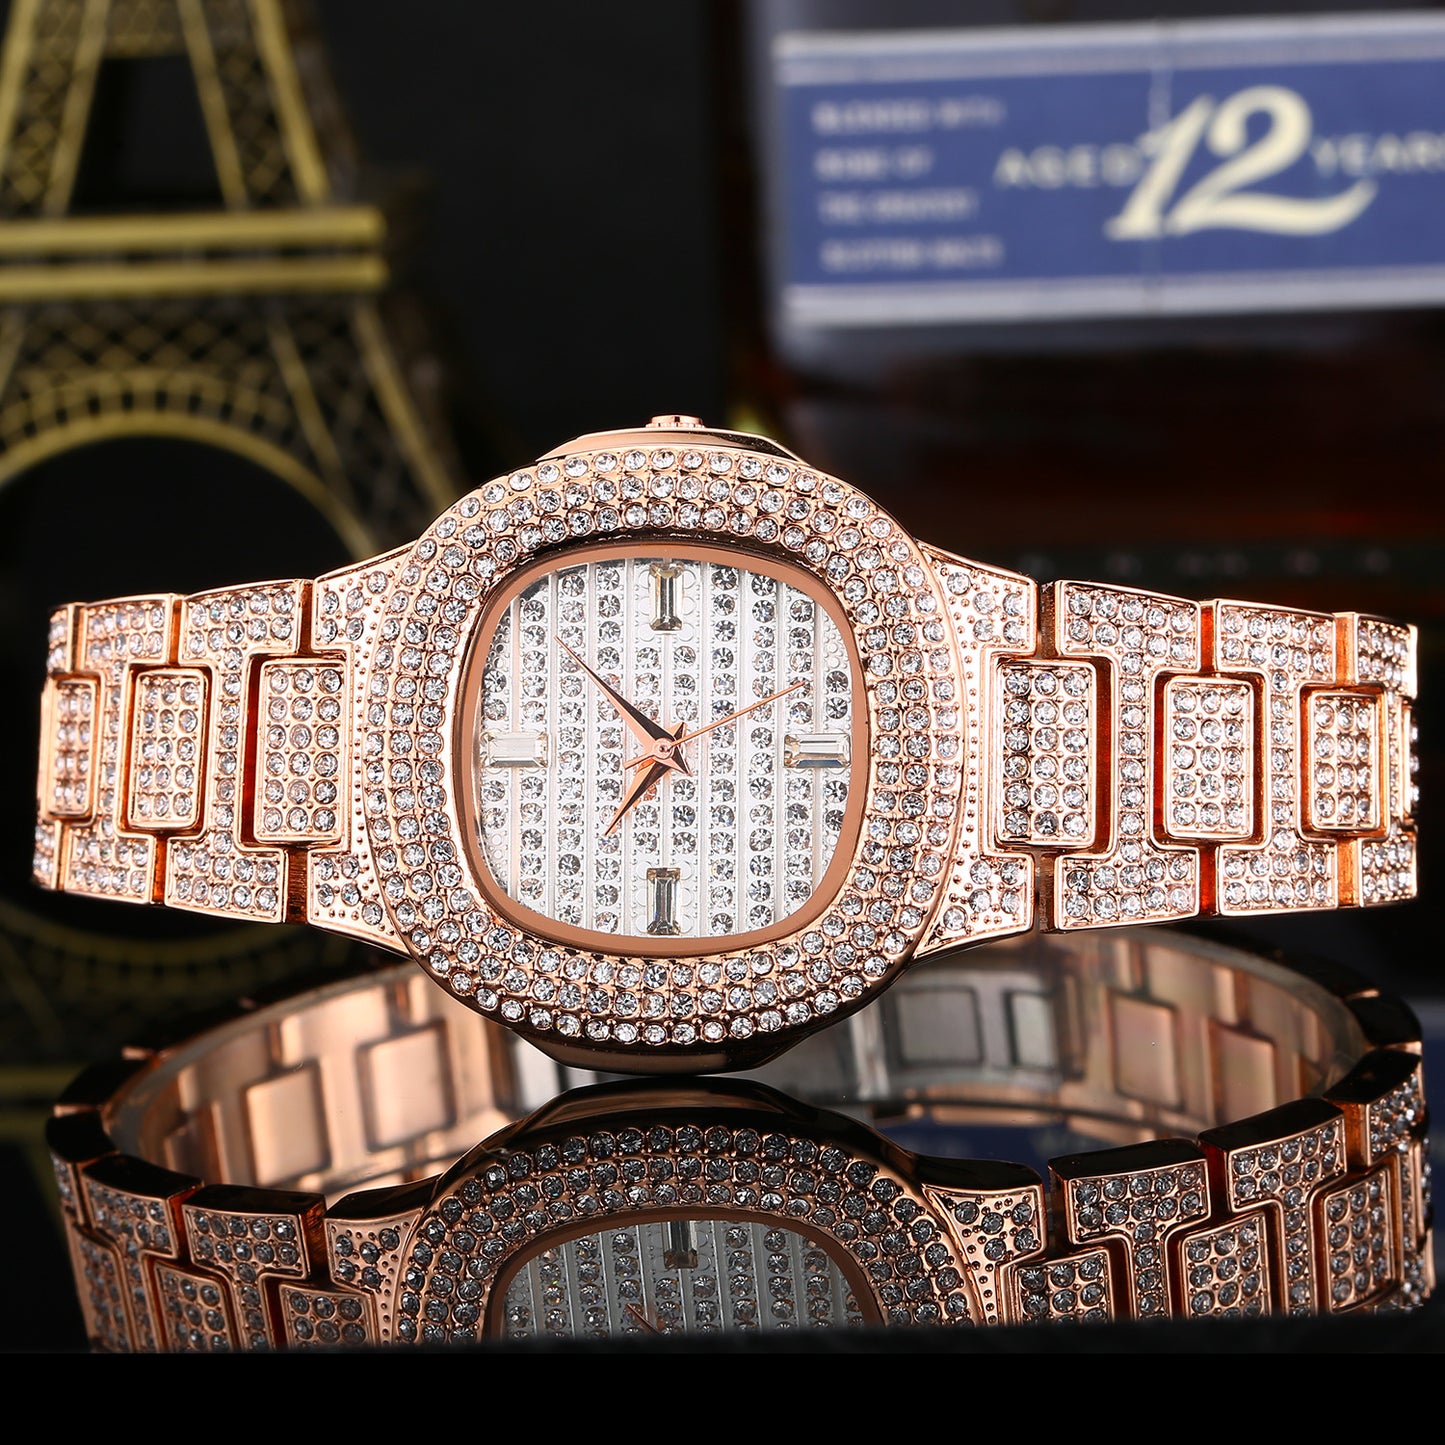 Fashion diamond watch